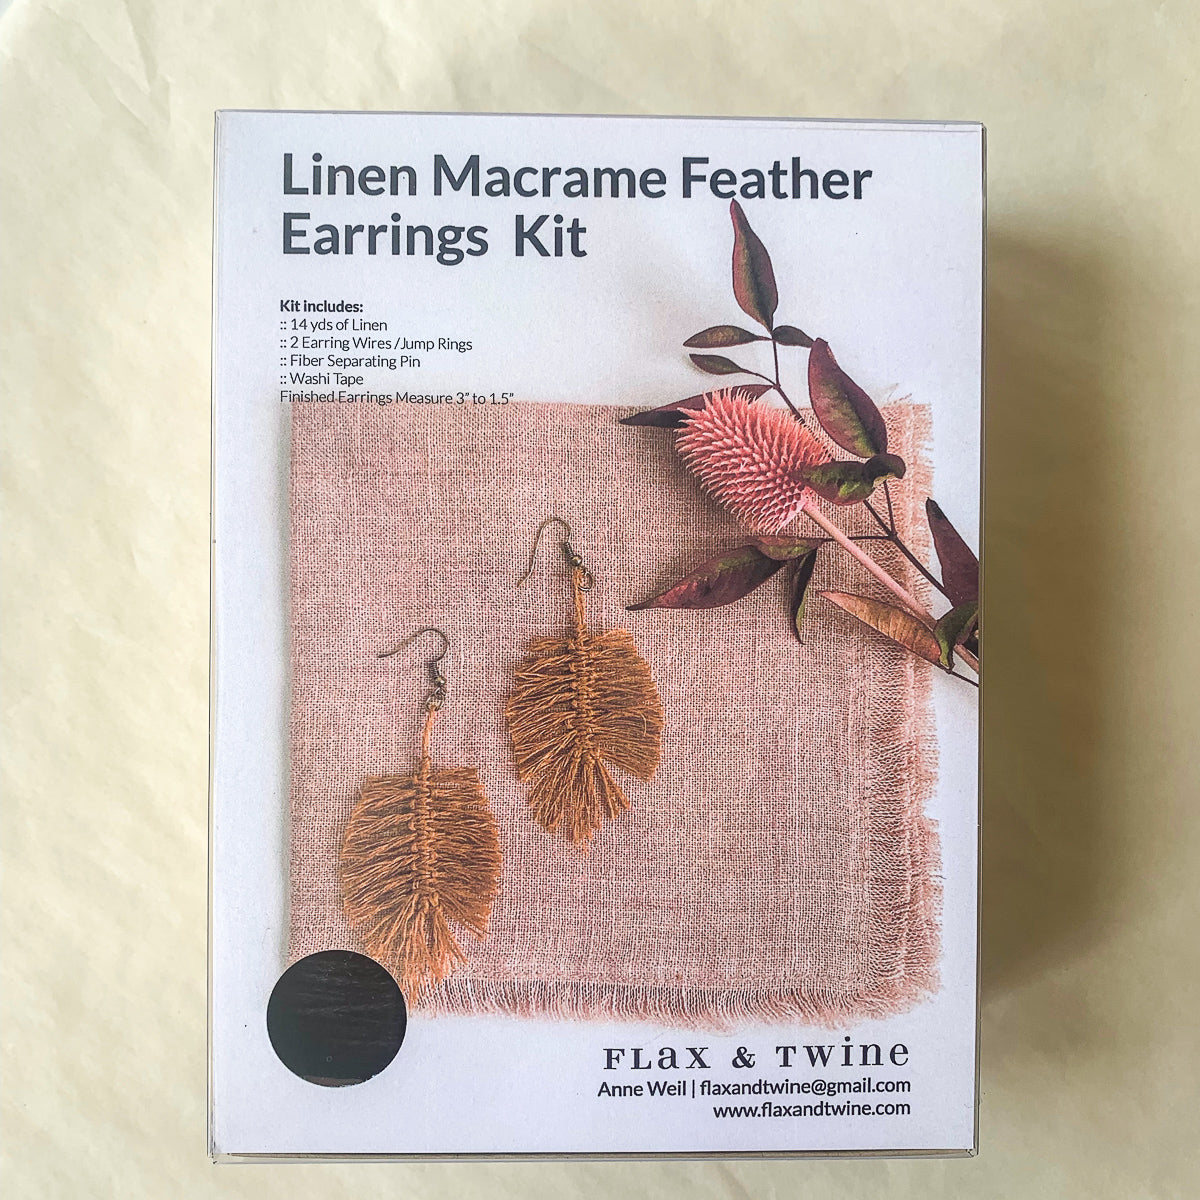 Linen Macrame Feather Earrings Kit